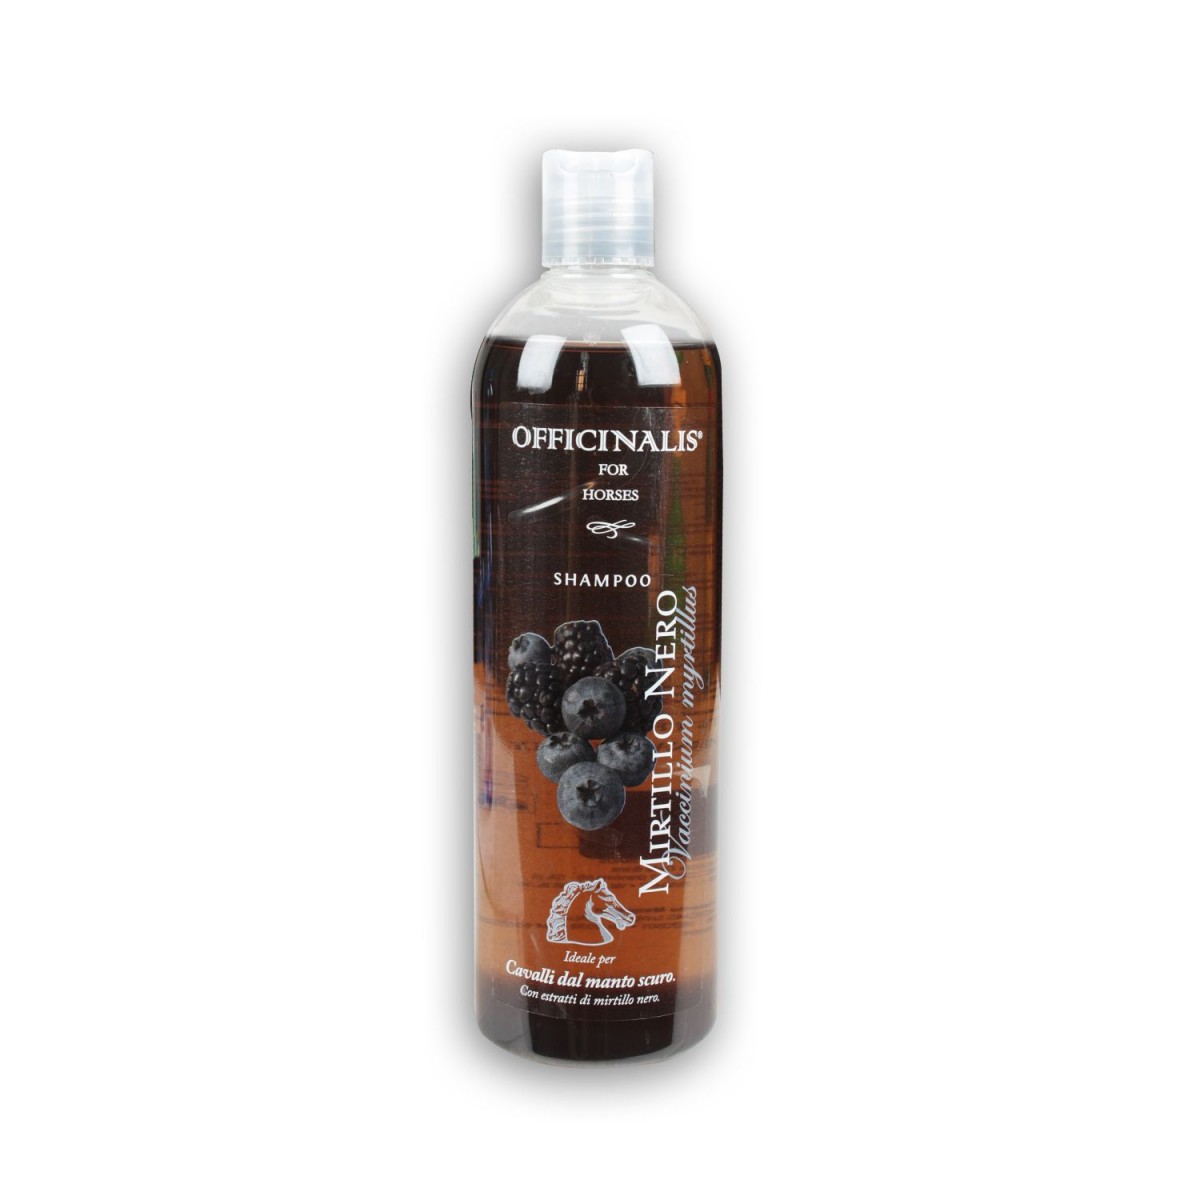 Shampoo MIRTILLO NERO - für dunkle Pferde, 500 ml